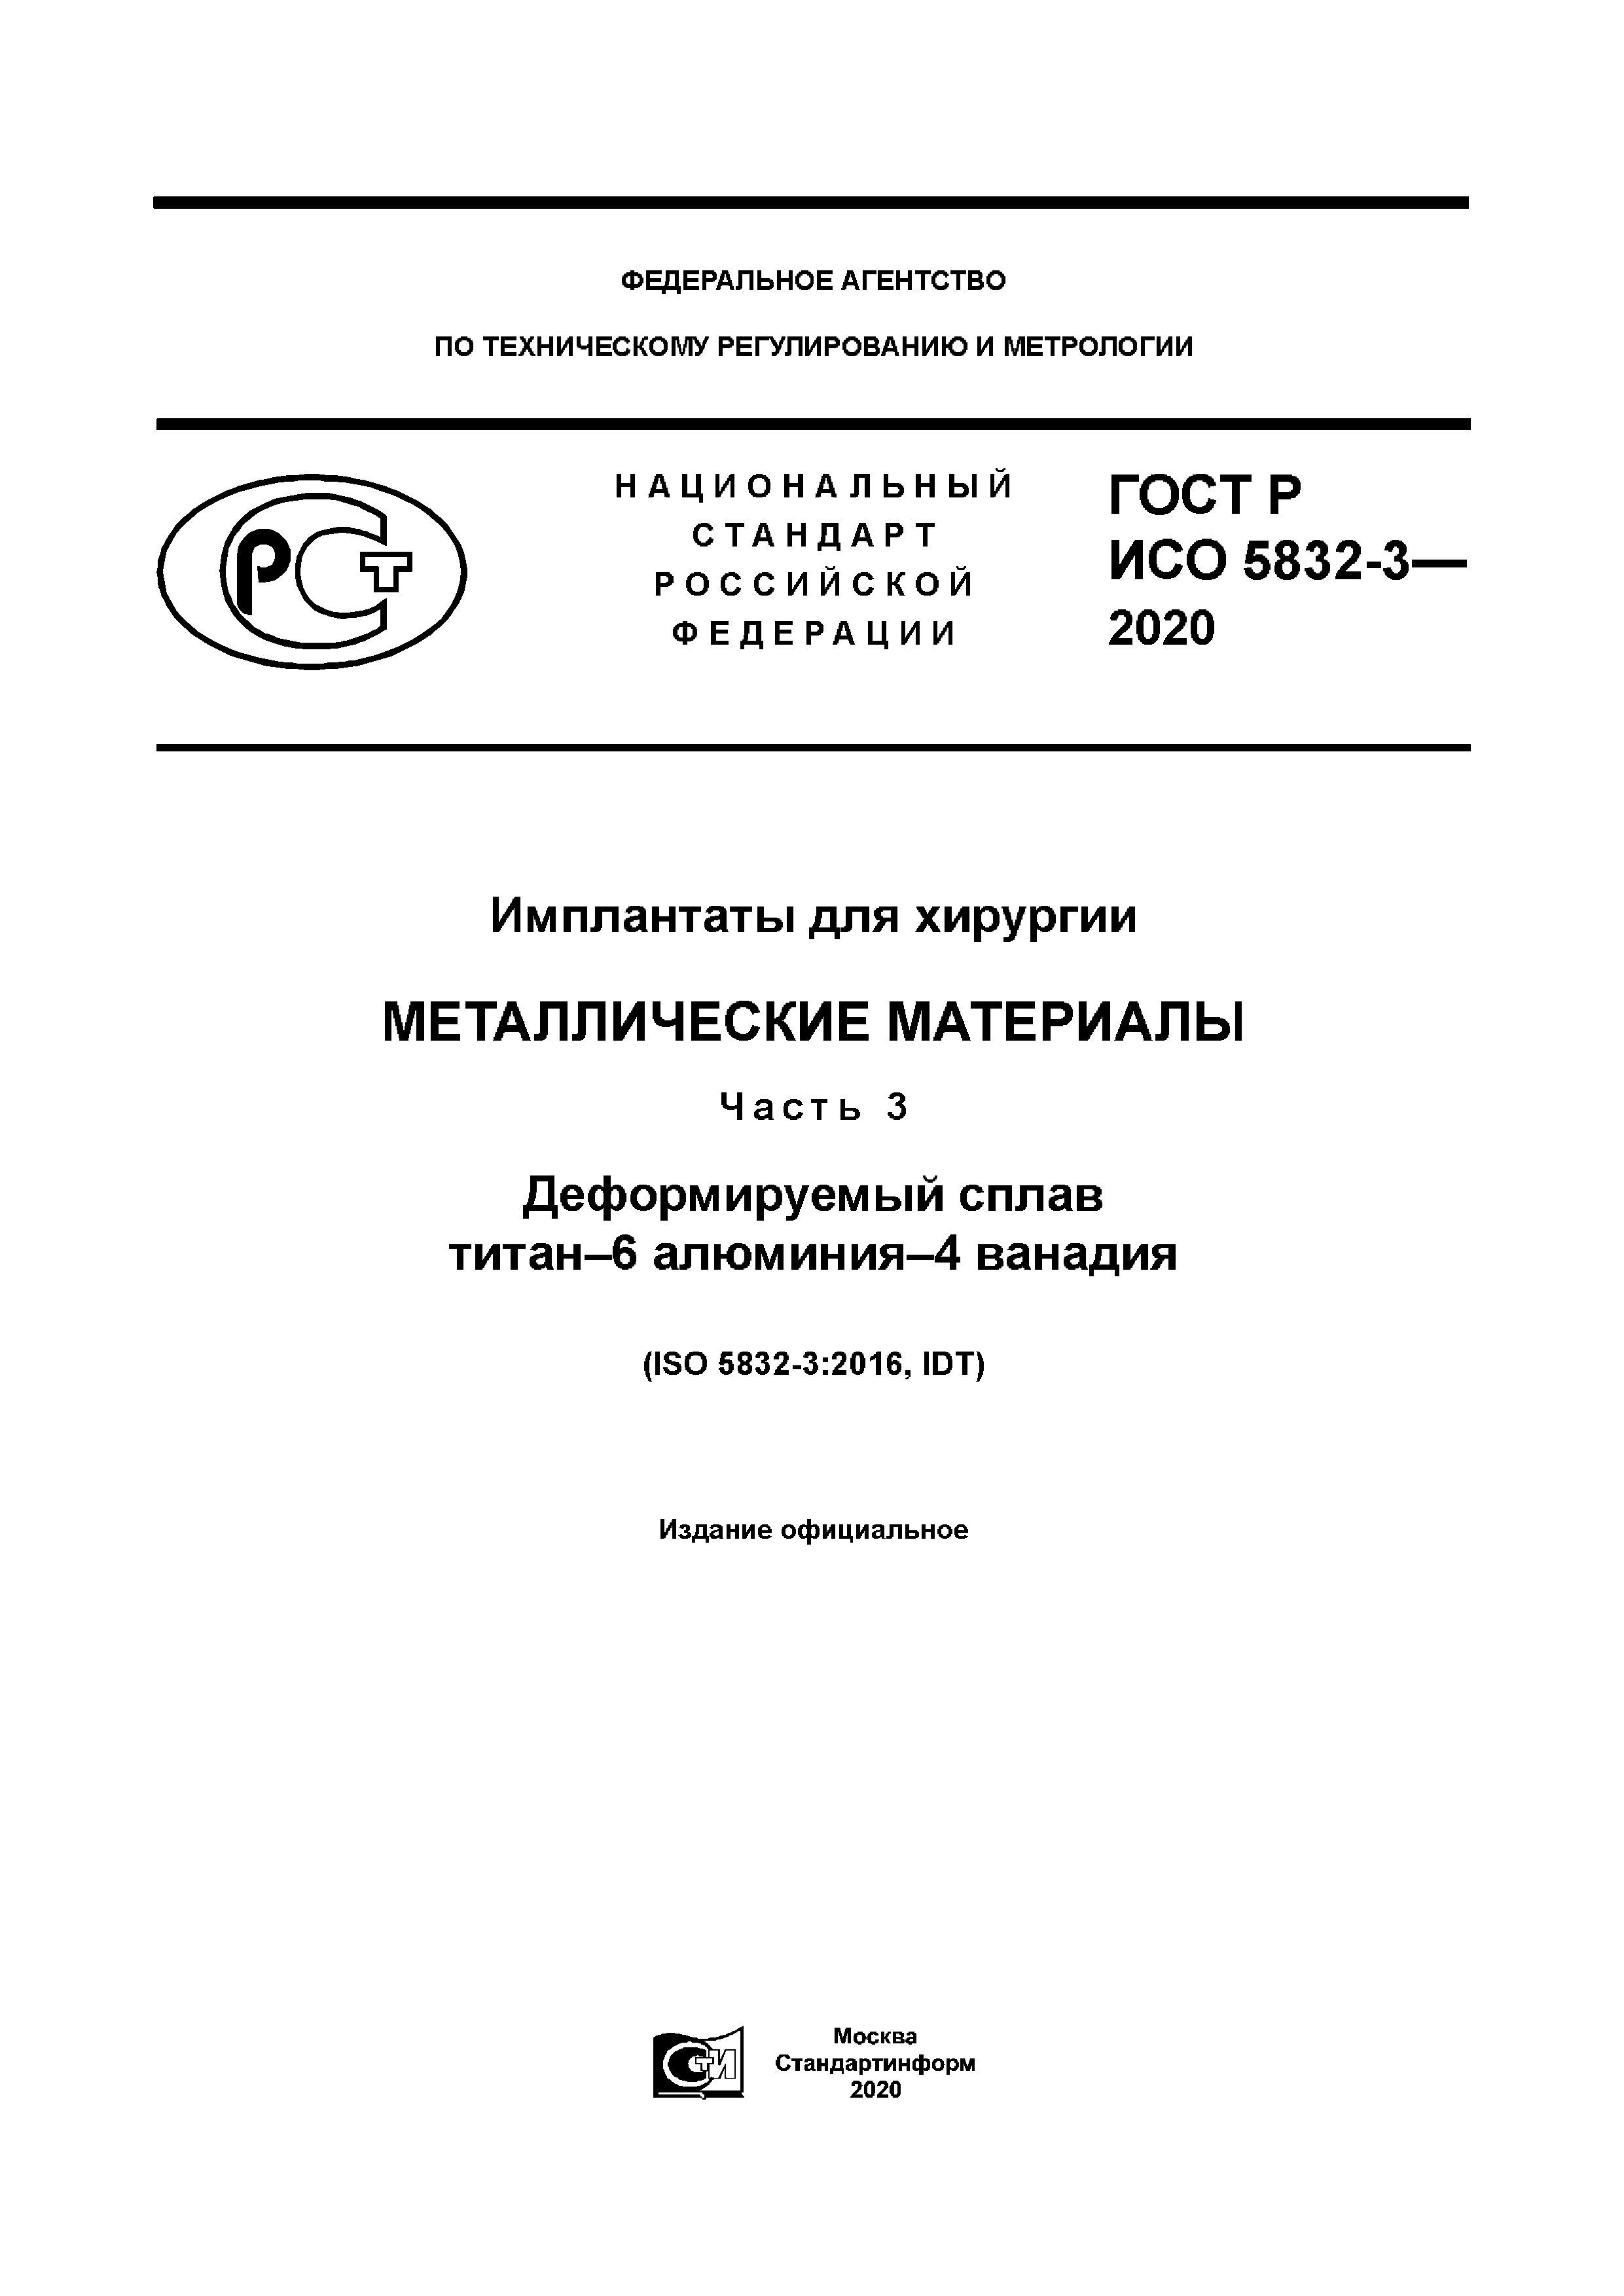 ГОСТ Р ИСО 5832-3-2020